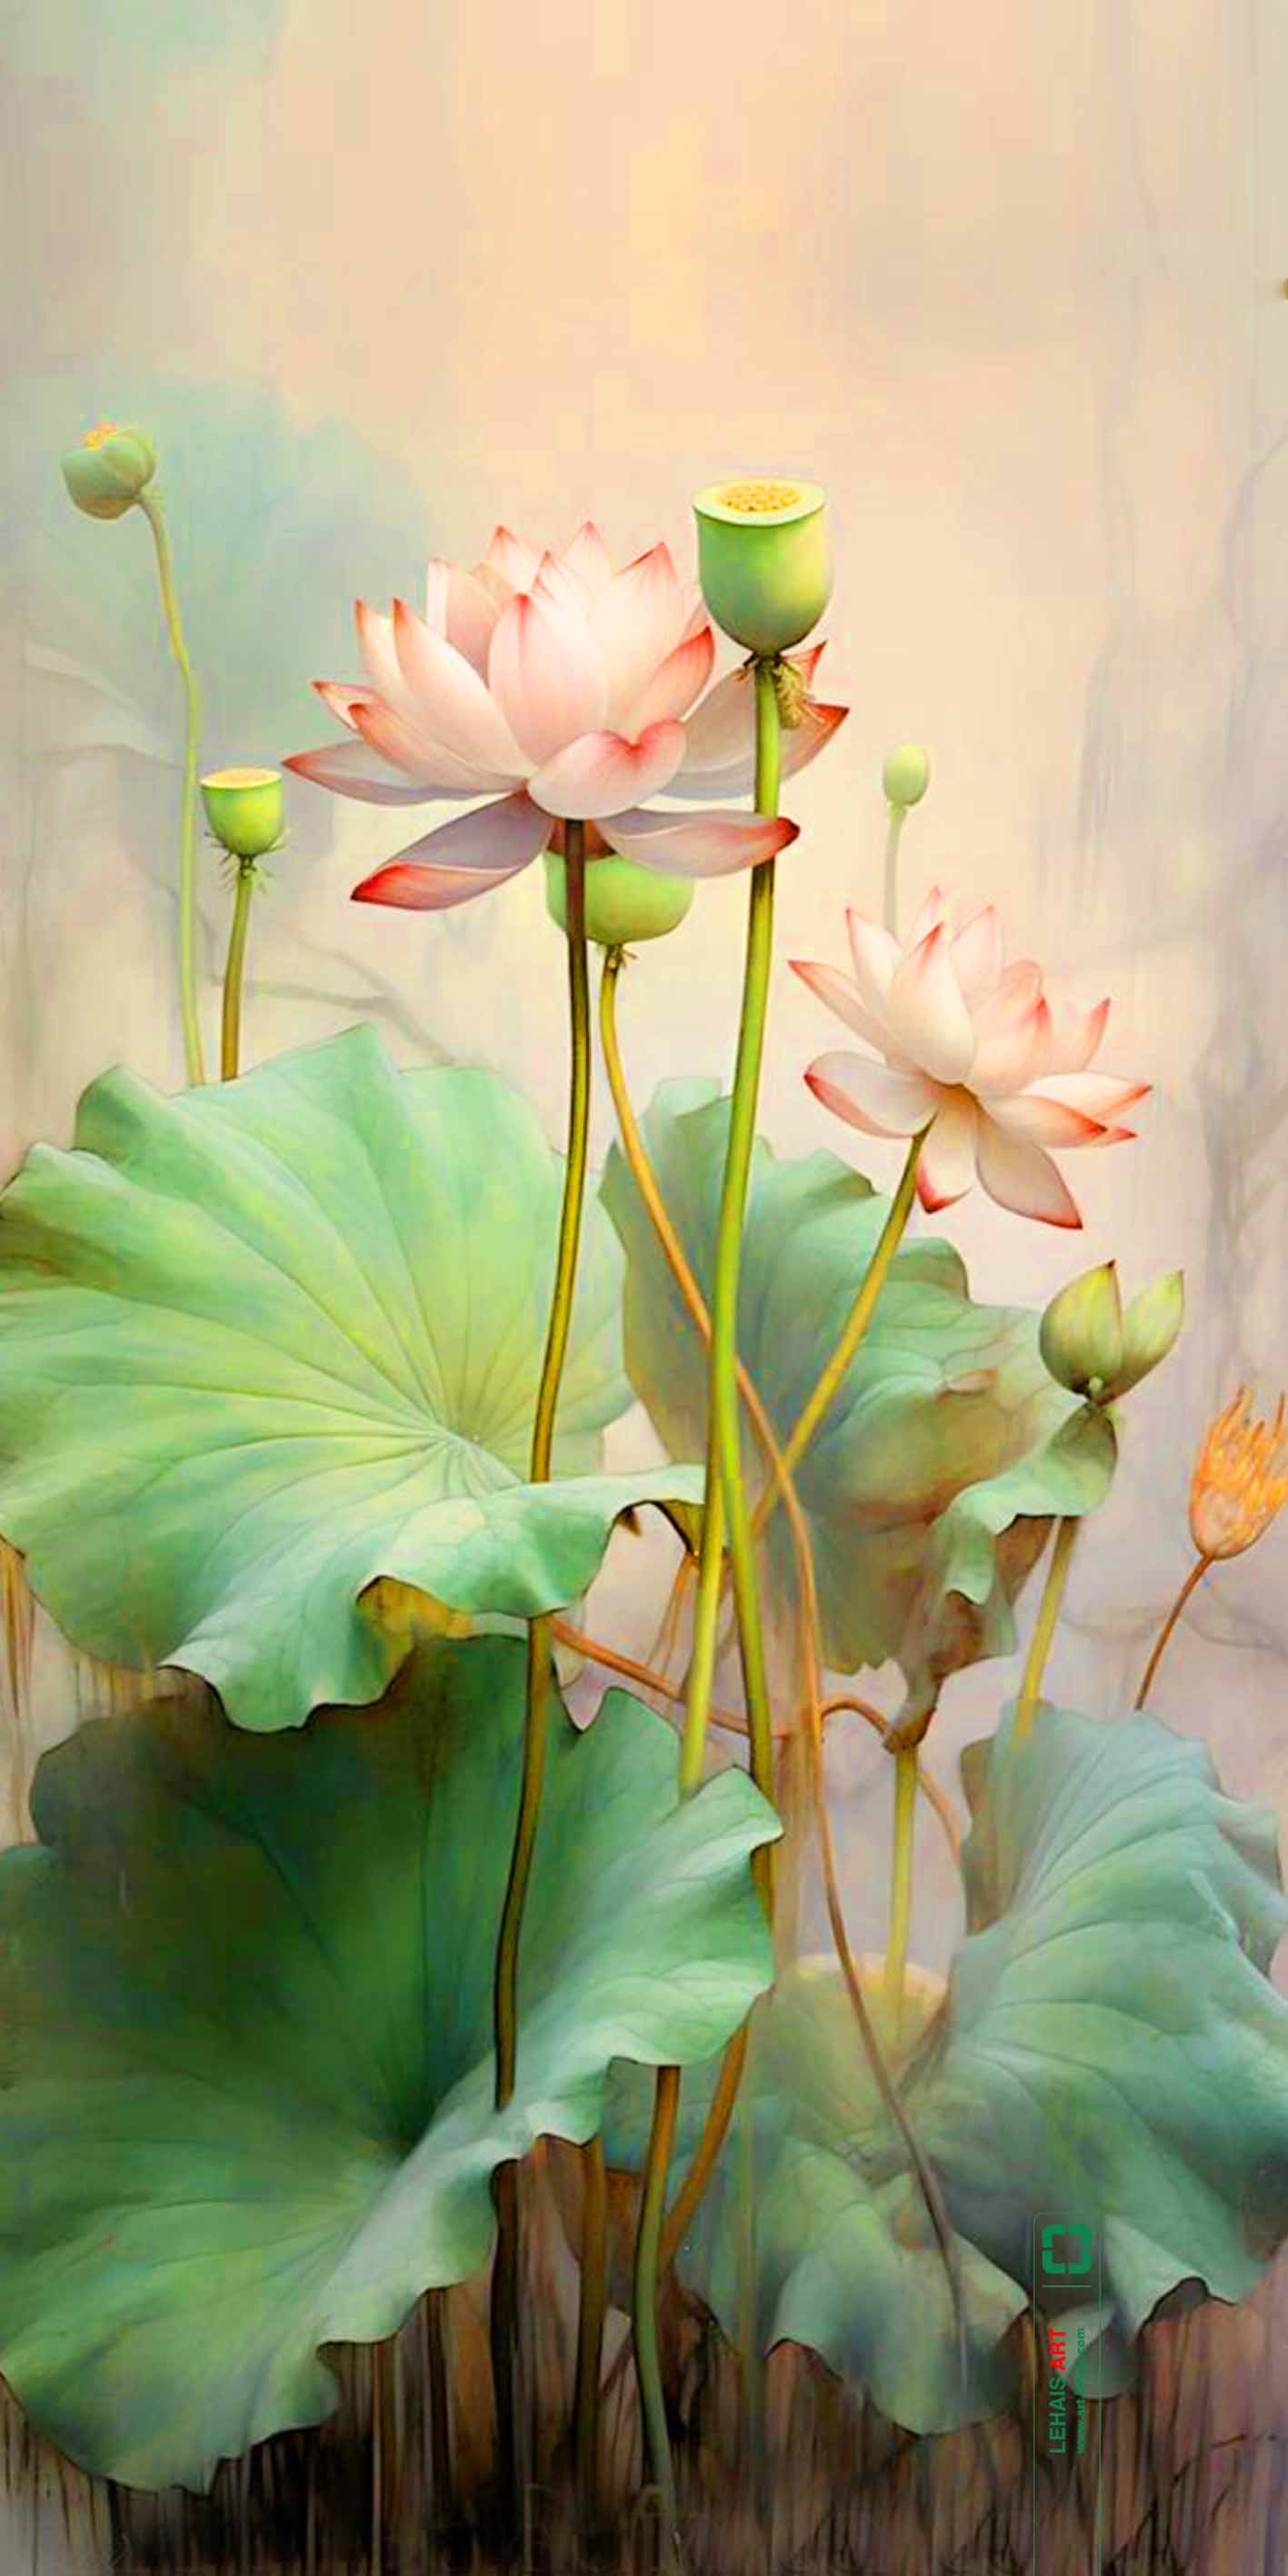 Tranh sơn dầu vẽ Hoa Sen tả thực theo phong cách Hiện Đại - TSD759LHAR